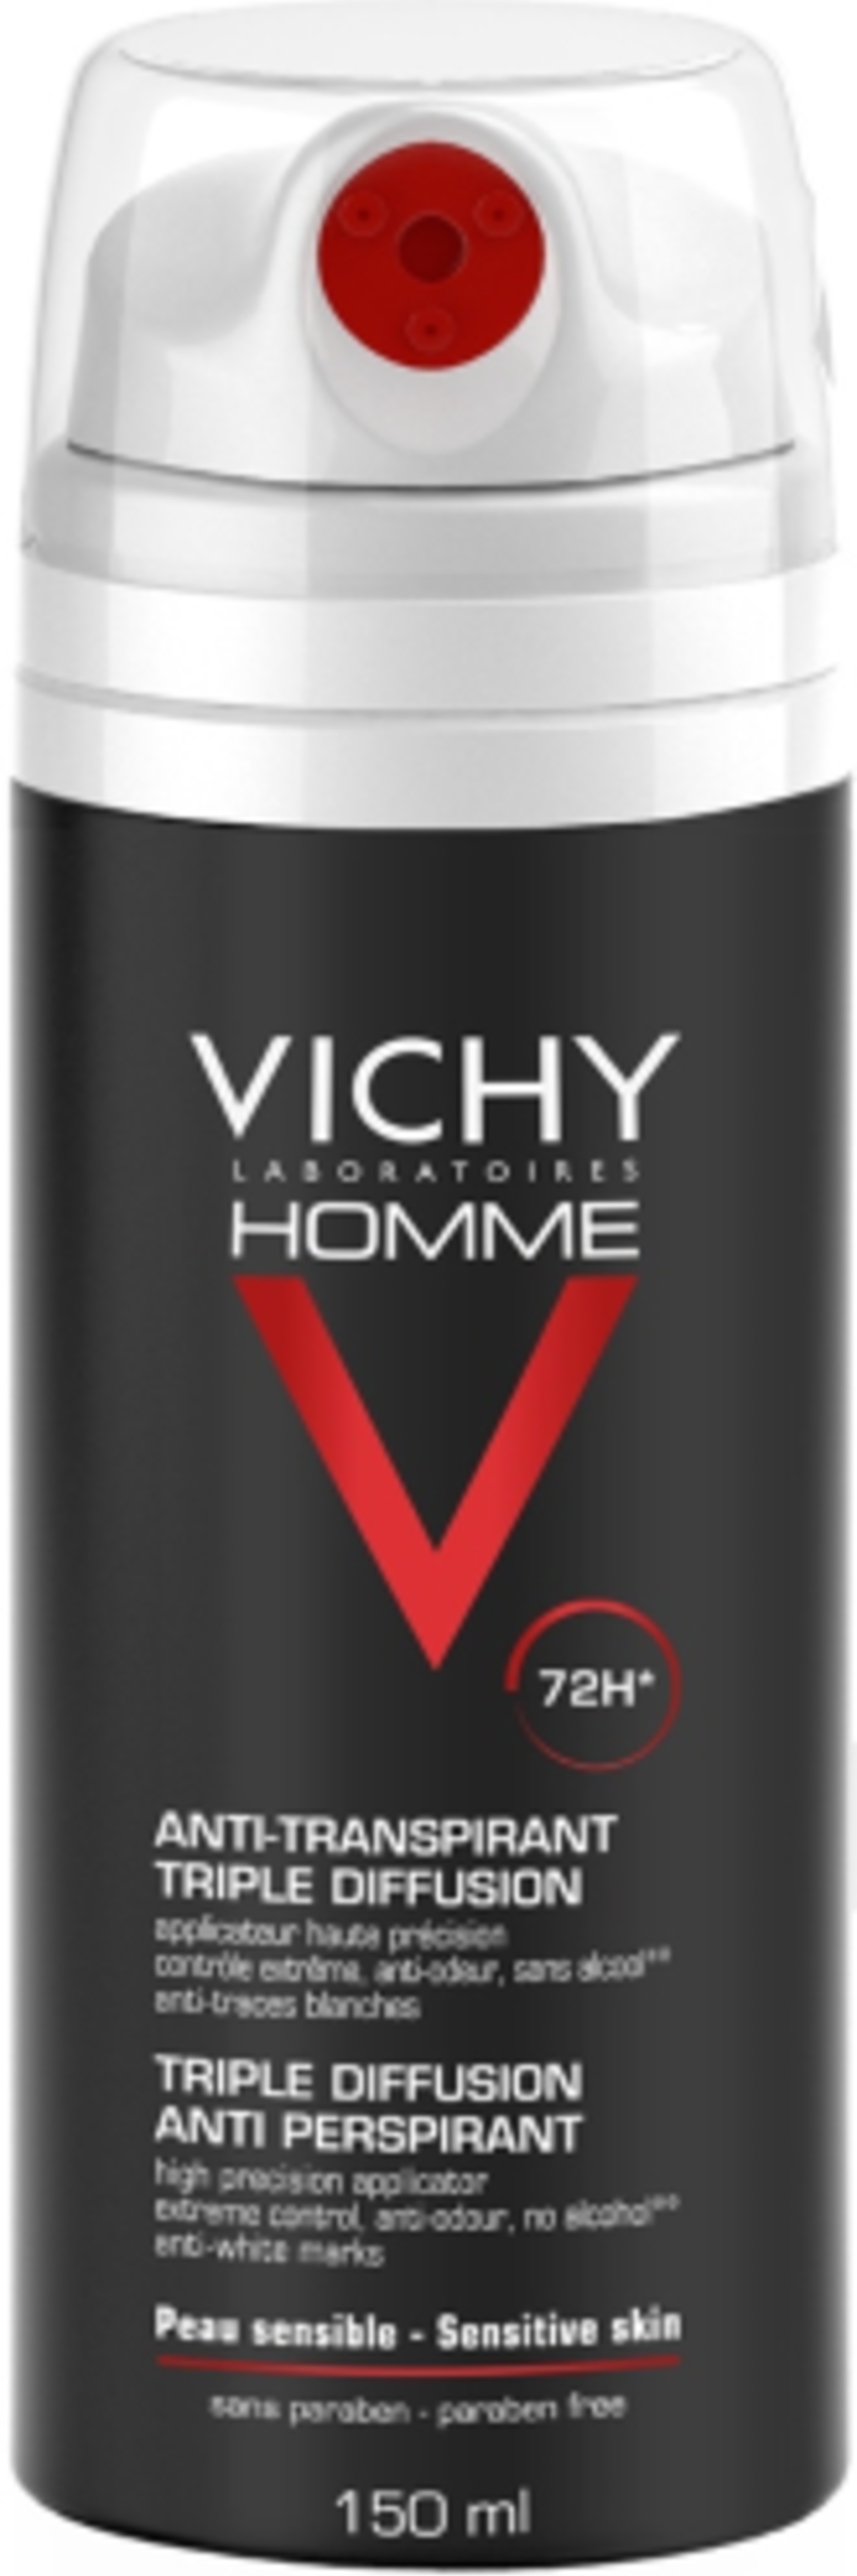 וישי - דאודורנט ספריי לגבר 72 שעות Vichy Homme